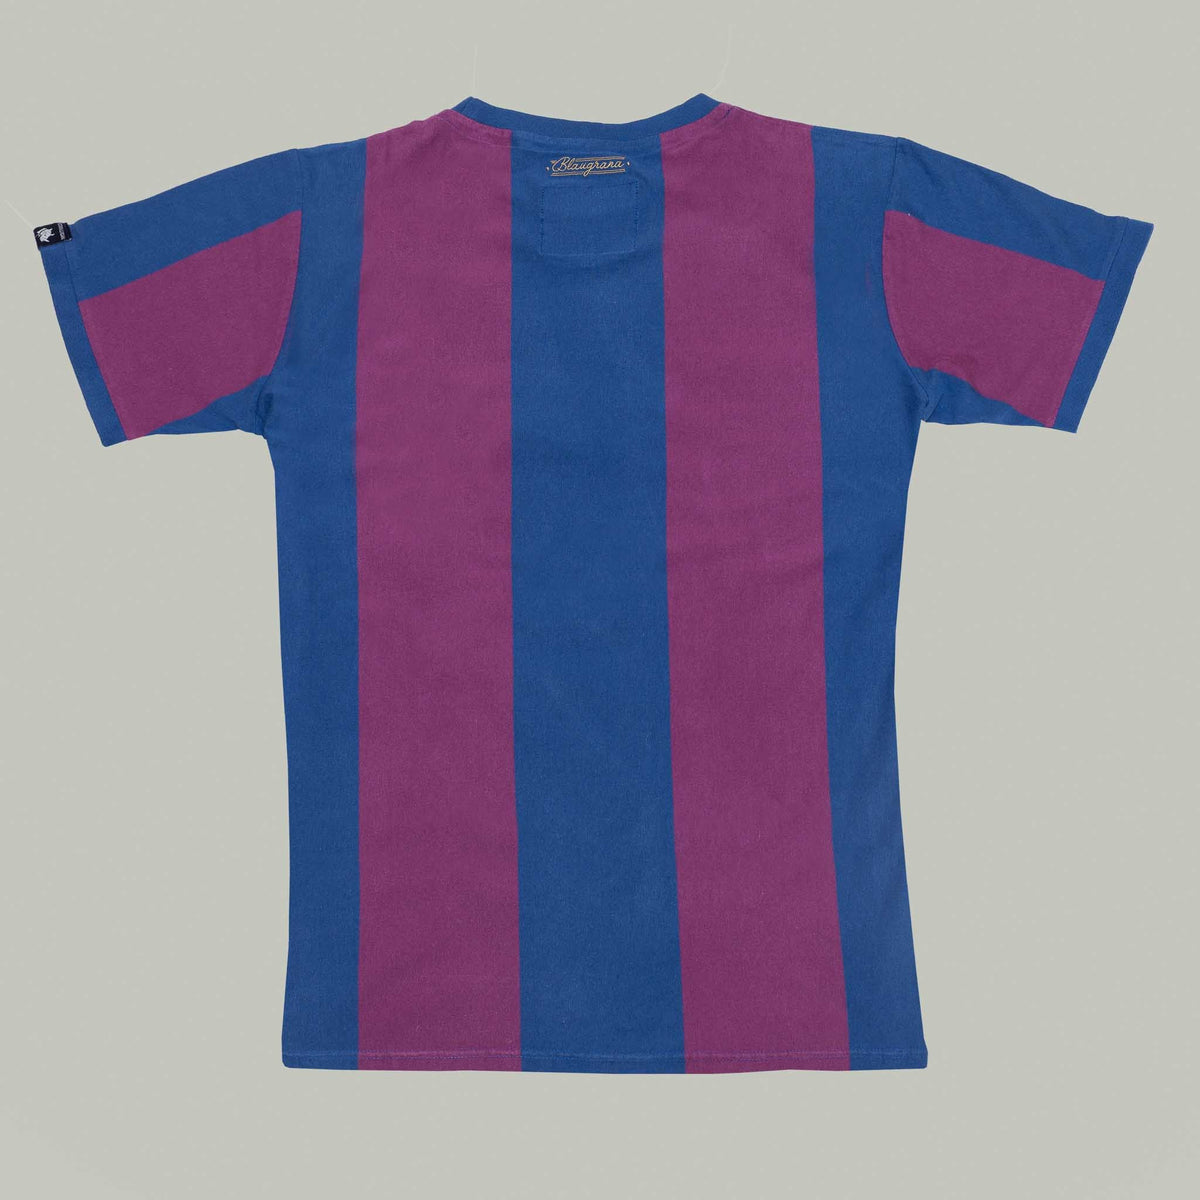 Camiseta De Fútbol Retro 1899 Blaugrana - Coolligan